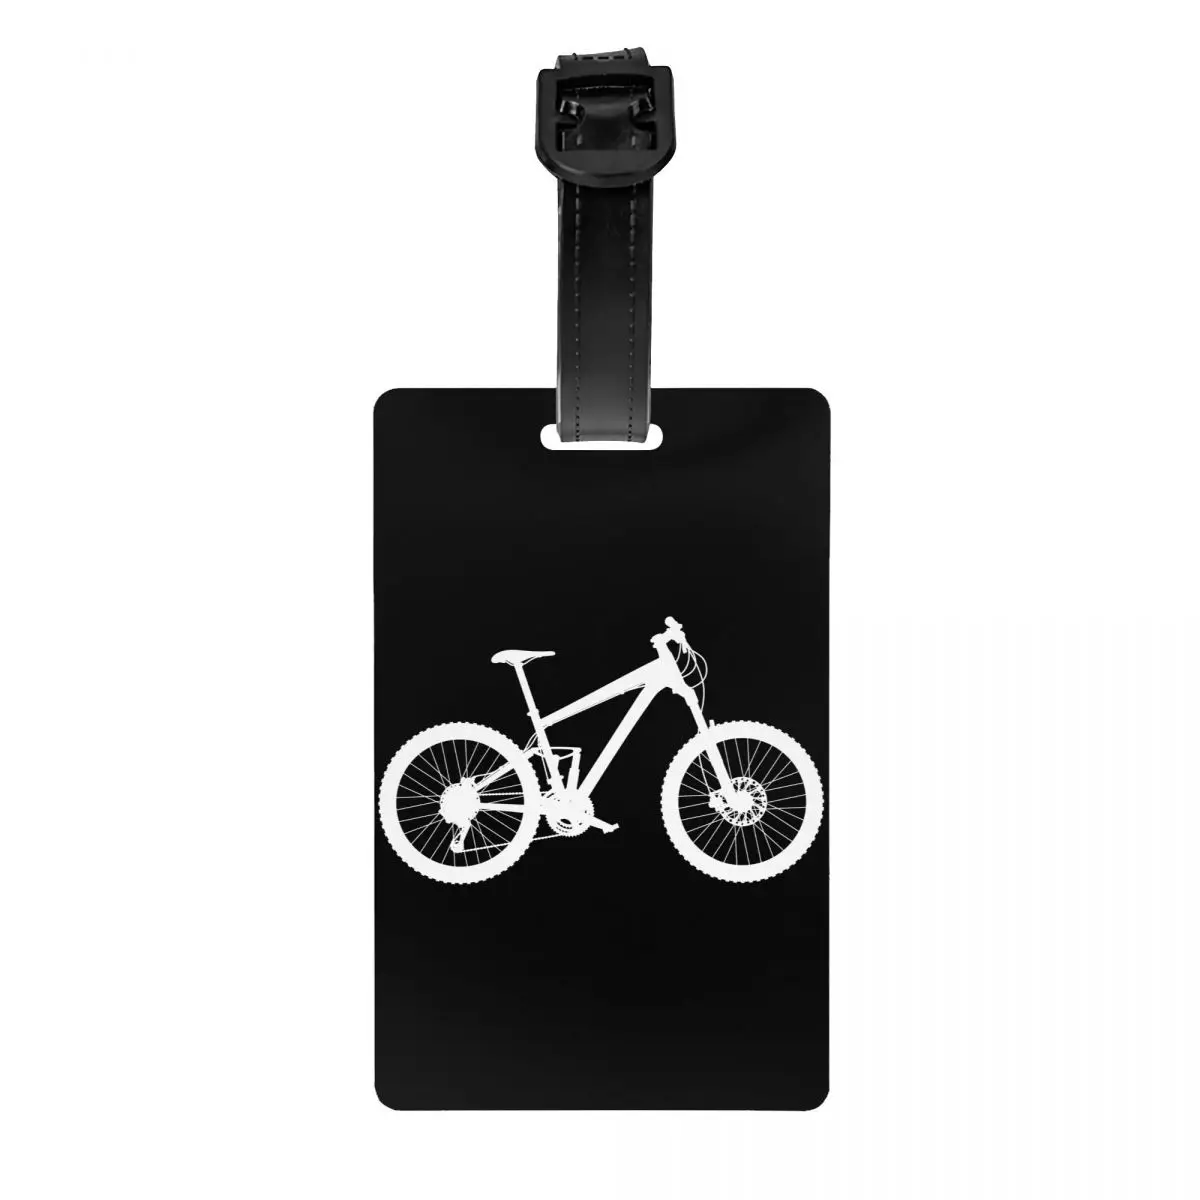 

Ярлык для багажа на горный велосипед, индивидуальные ярлыки для багажа на велосипед, велосипед, ярлыки для багажа, личная Обложка с именем, удостоверение личности